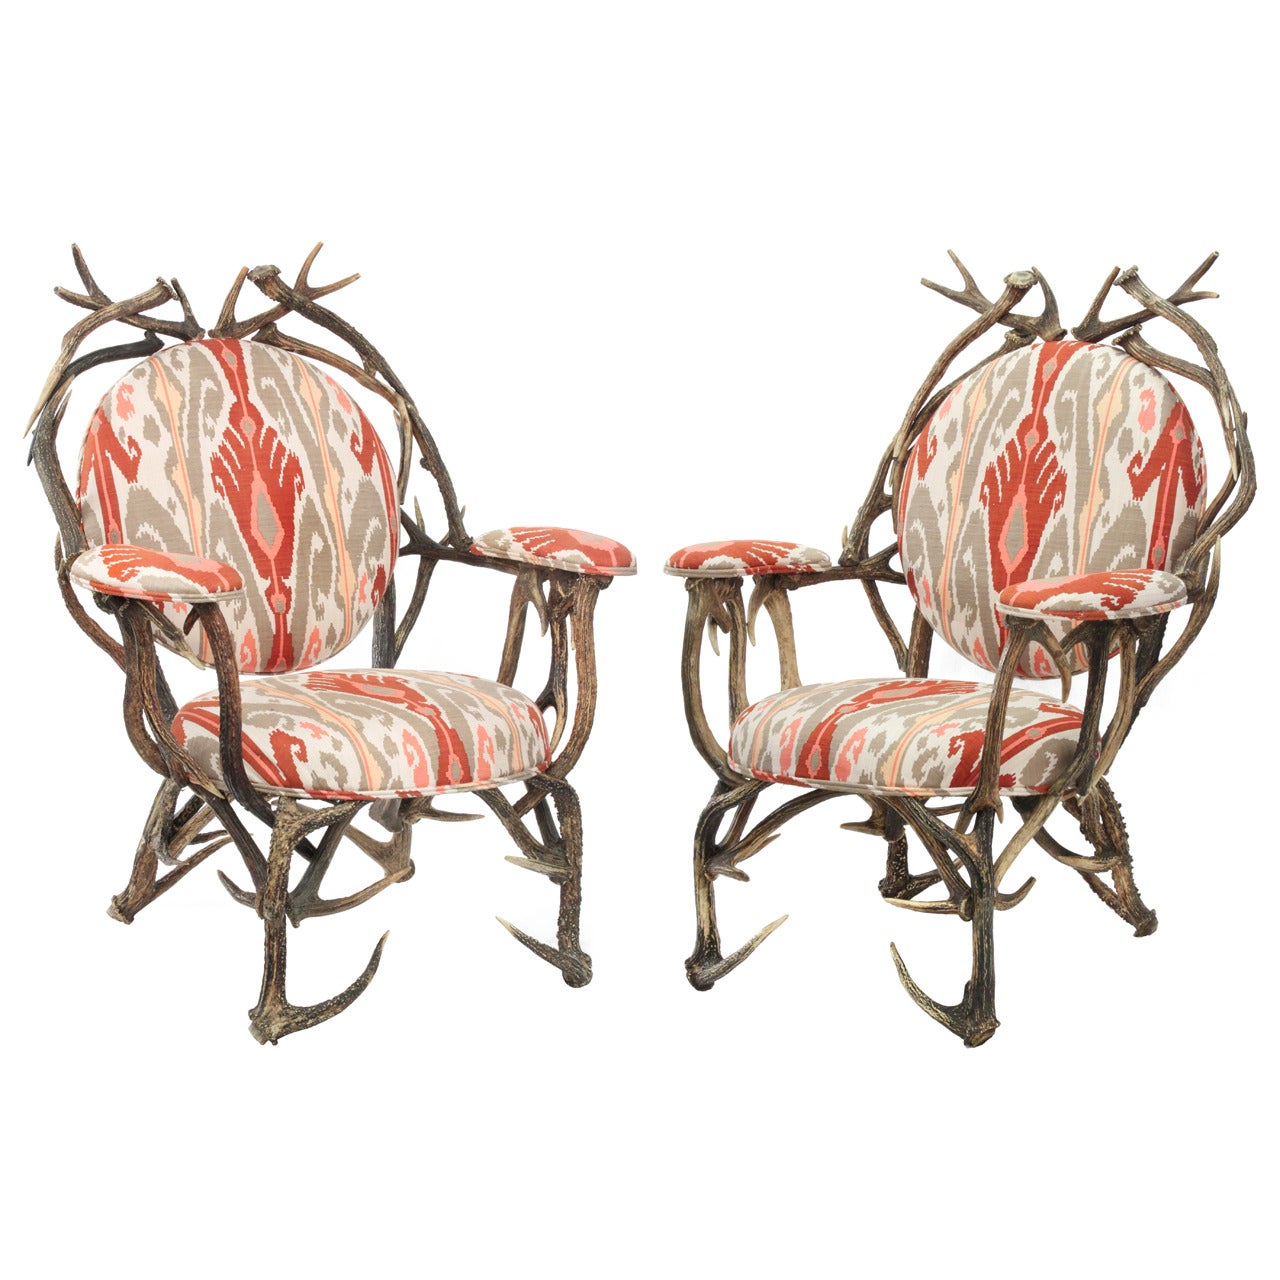 Pair of David Barrett Studio Made Antler Chairs 1970s